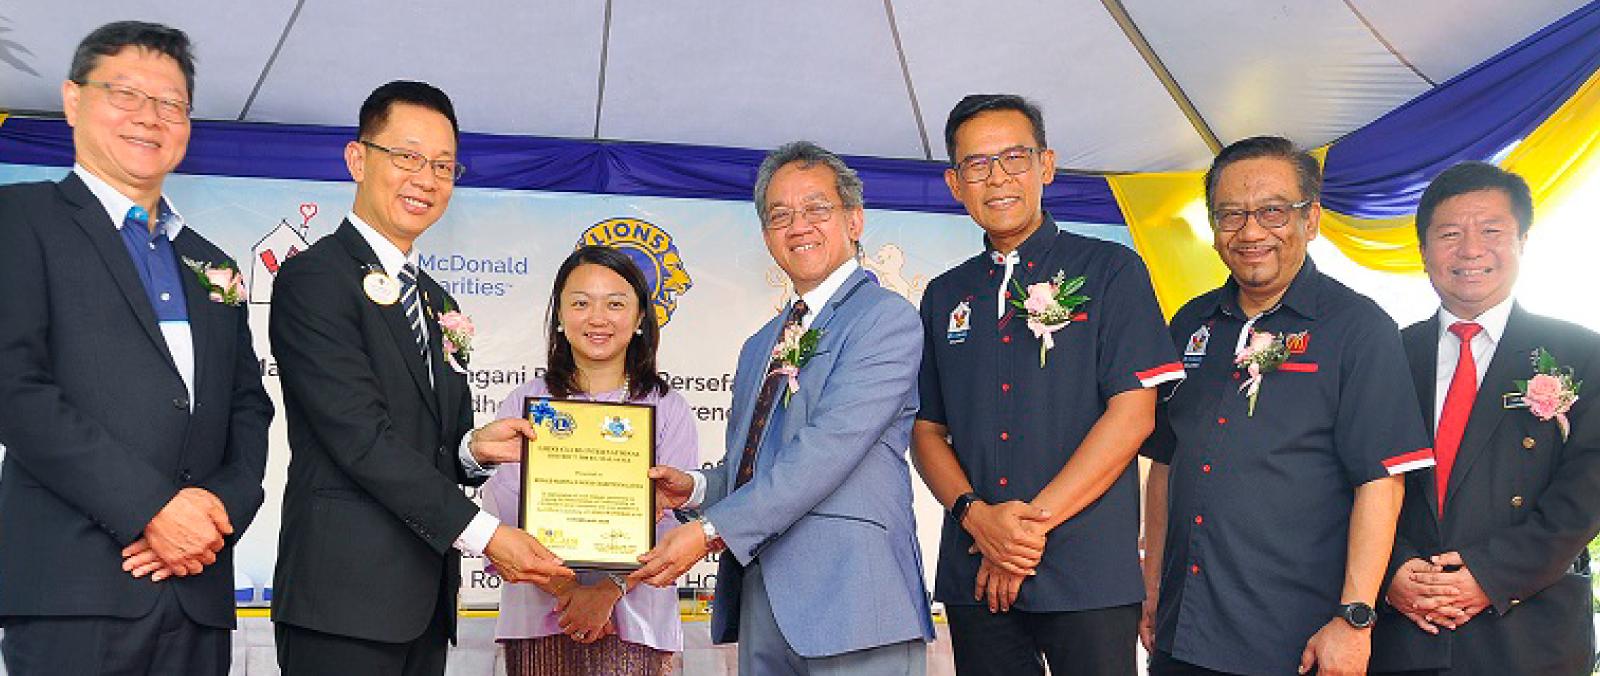 RMHC Malaysia dan Kelab Lions Antarabangsa jalin kerjasama  strategik untuk Kesedaran Kanser Kanak-kanak's image'